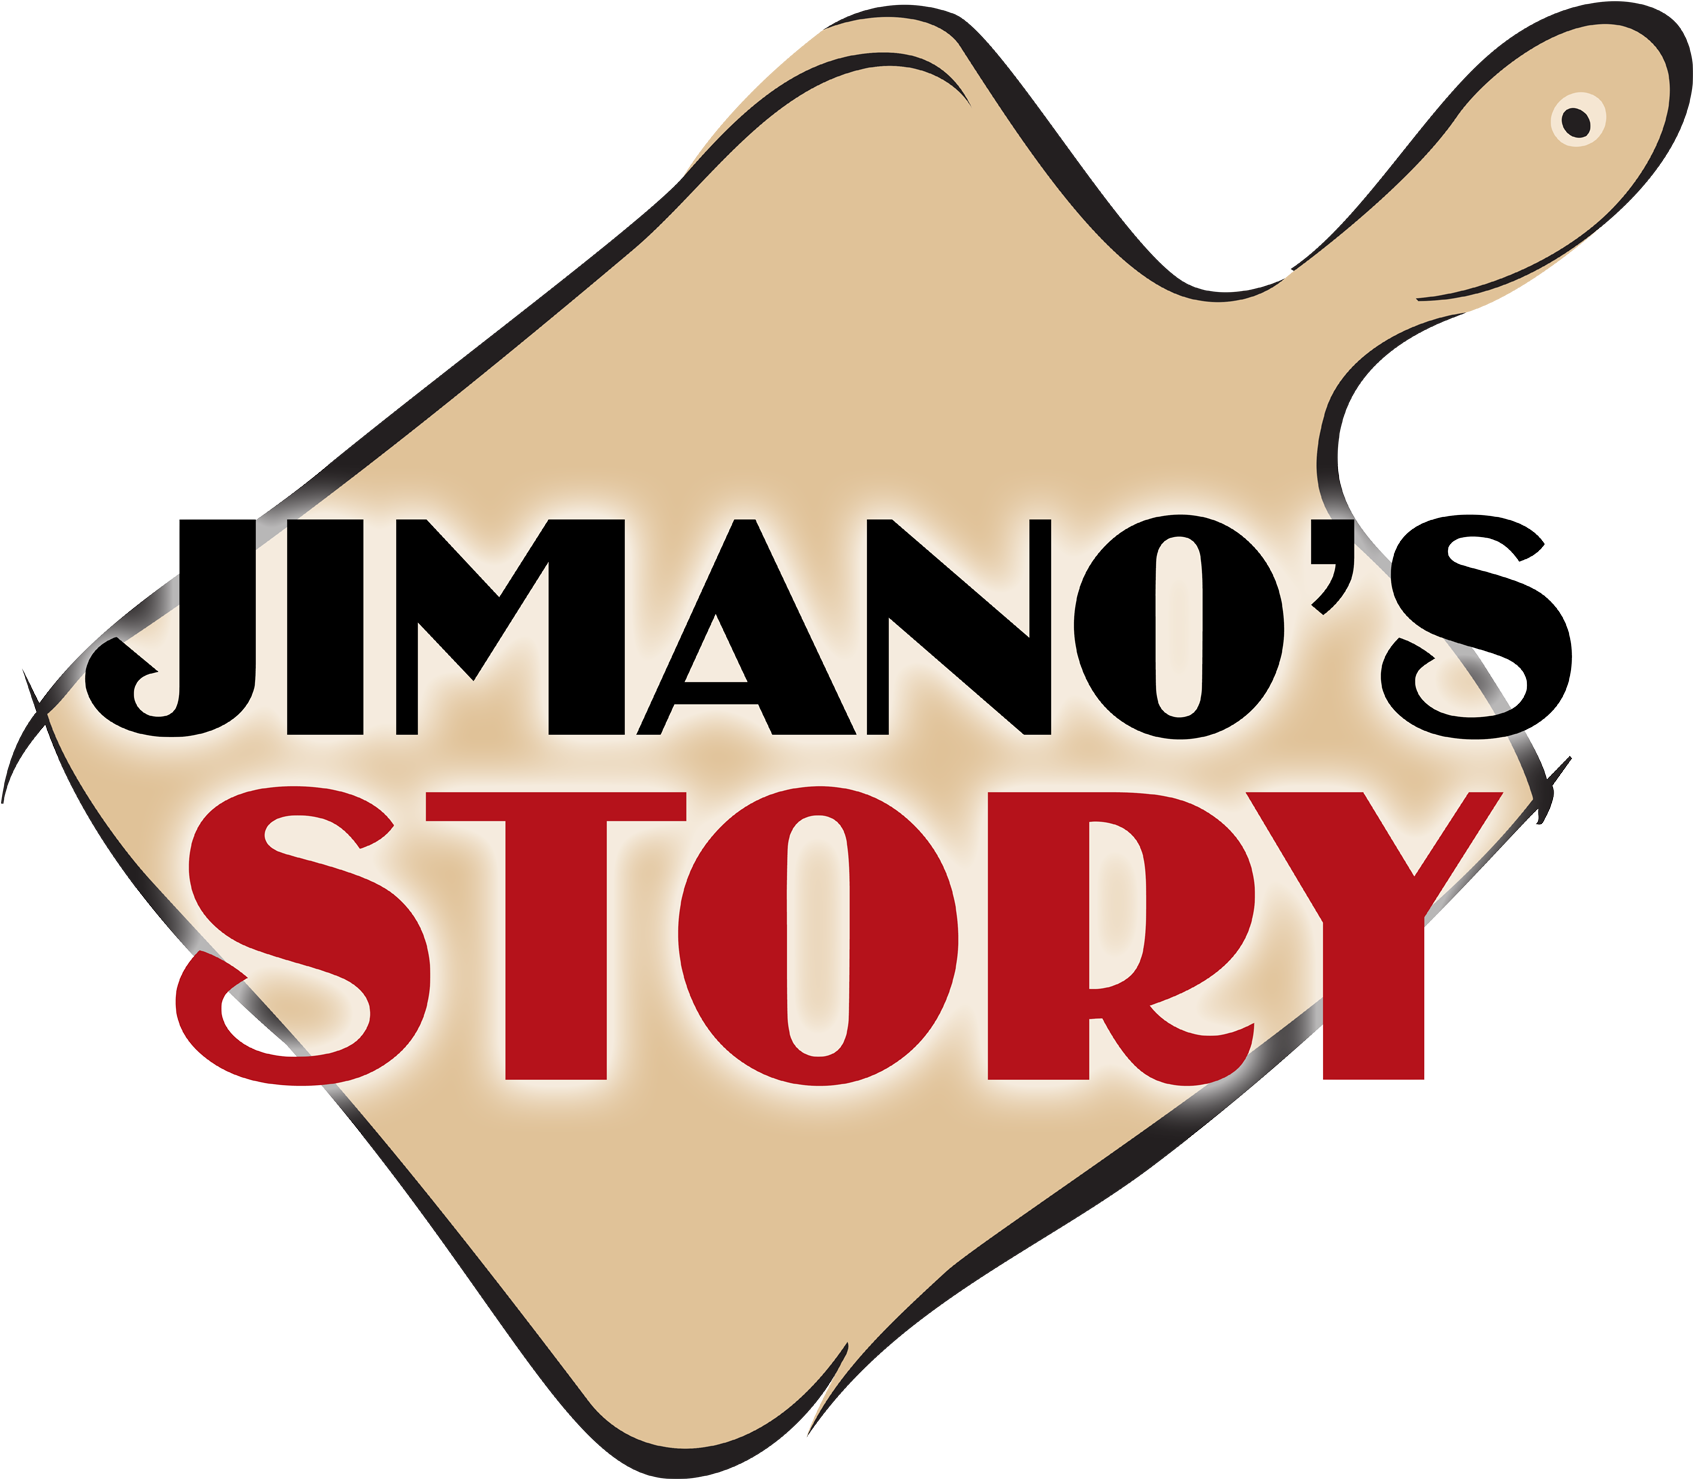 Jimano's Pizzeria - Jimano's Pizzeria (1744x1628)